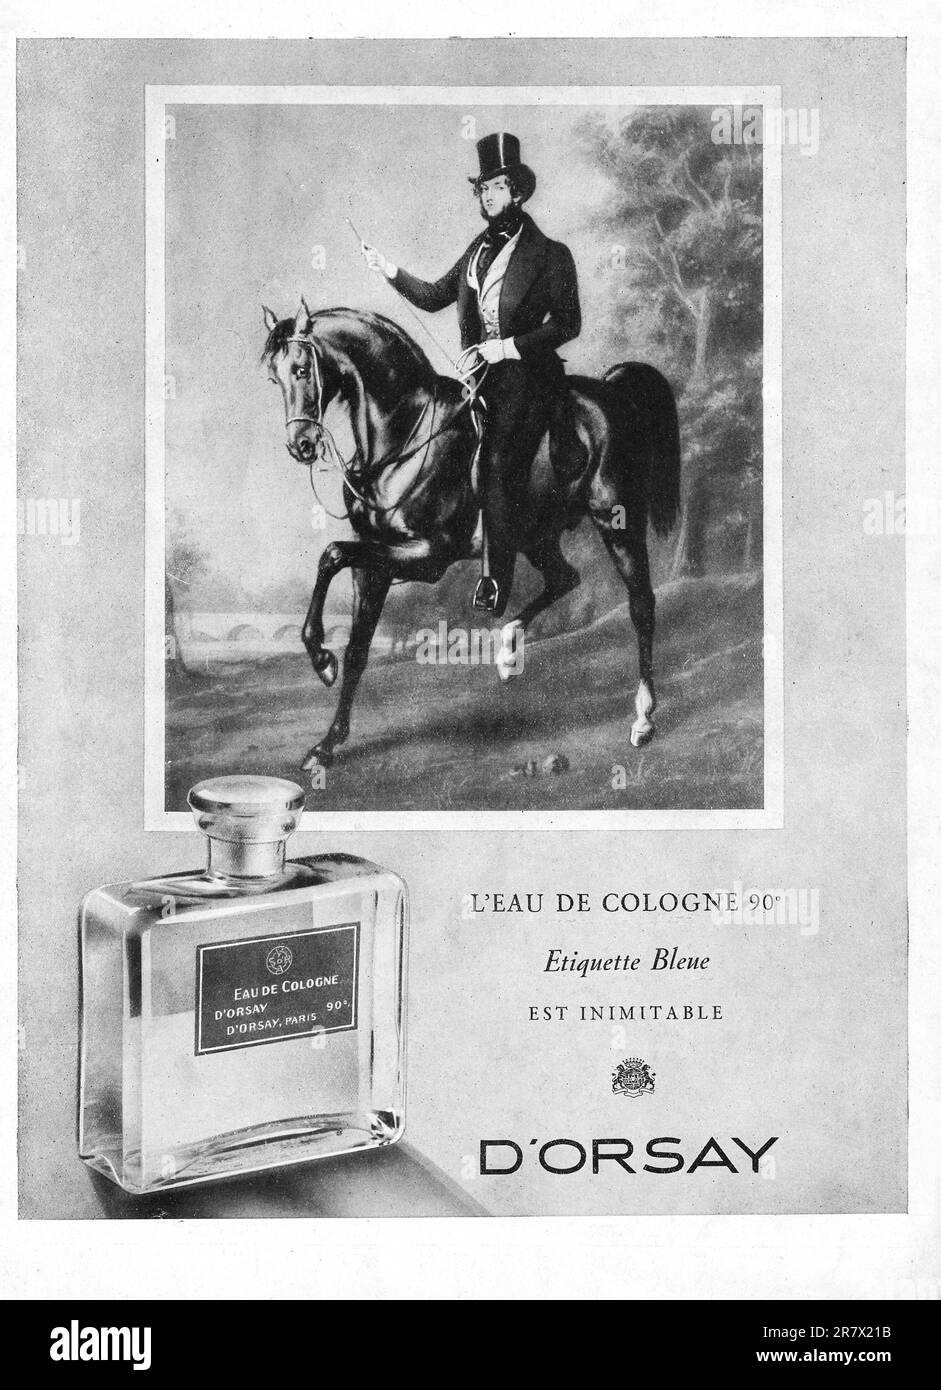 D'ORSAY L'eau De Cologne - Étiquette Bleue -  perfume advert in a French magazine March 1947 Stock Photo